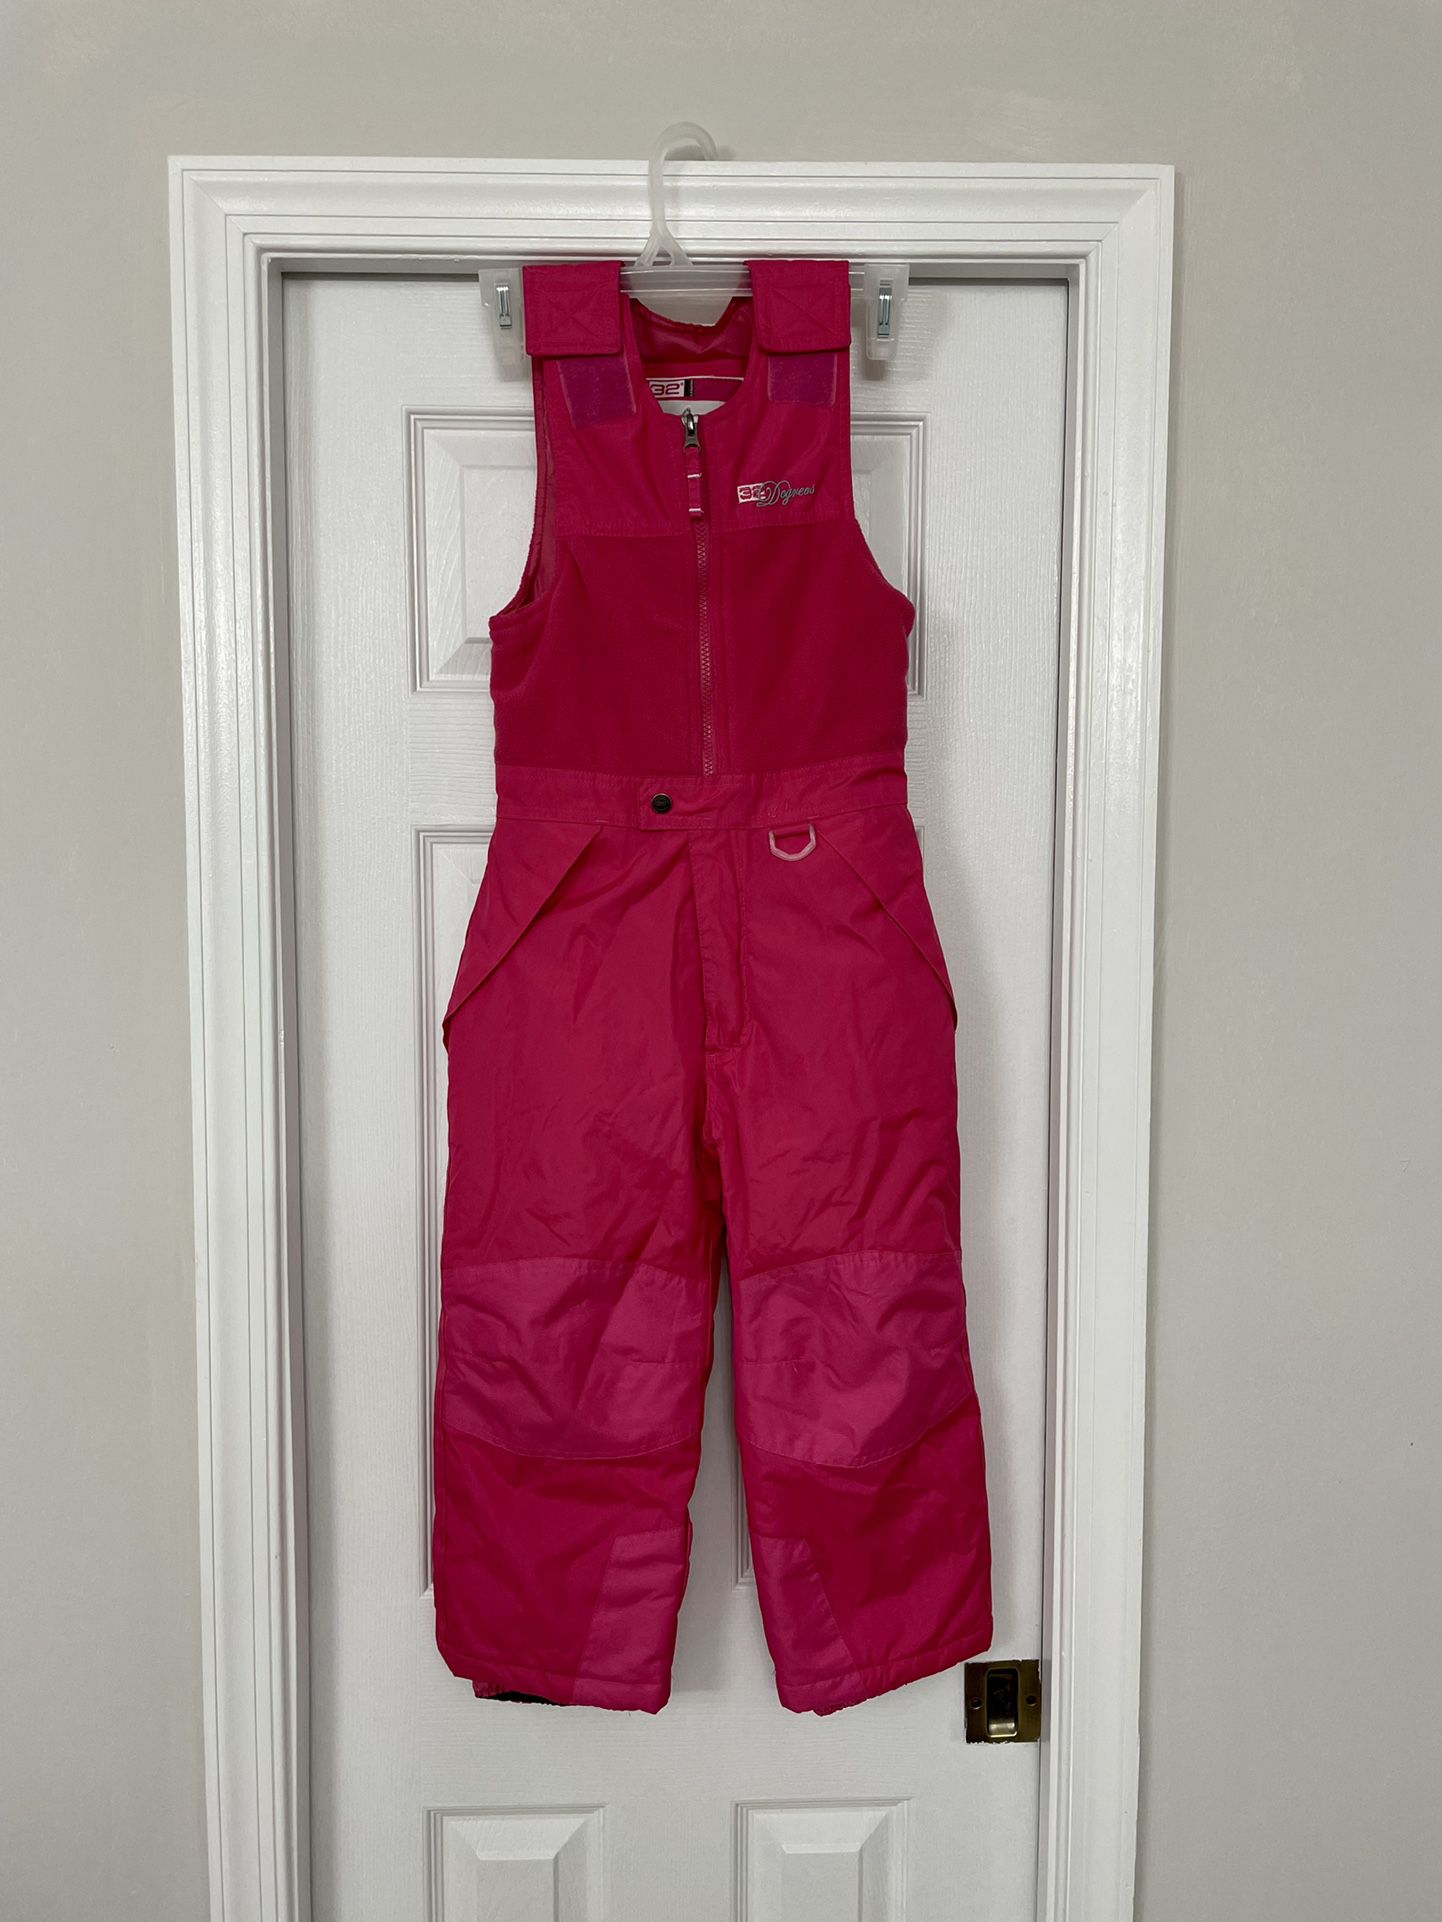 Girls size 6 Weatherproof 32° pink warm winter ski/snowboard bibs Excellent condition in Weston